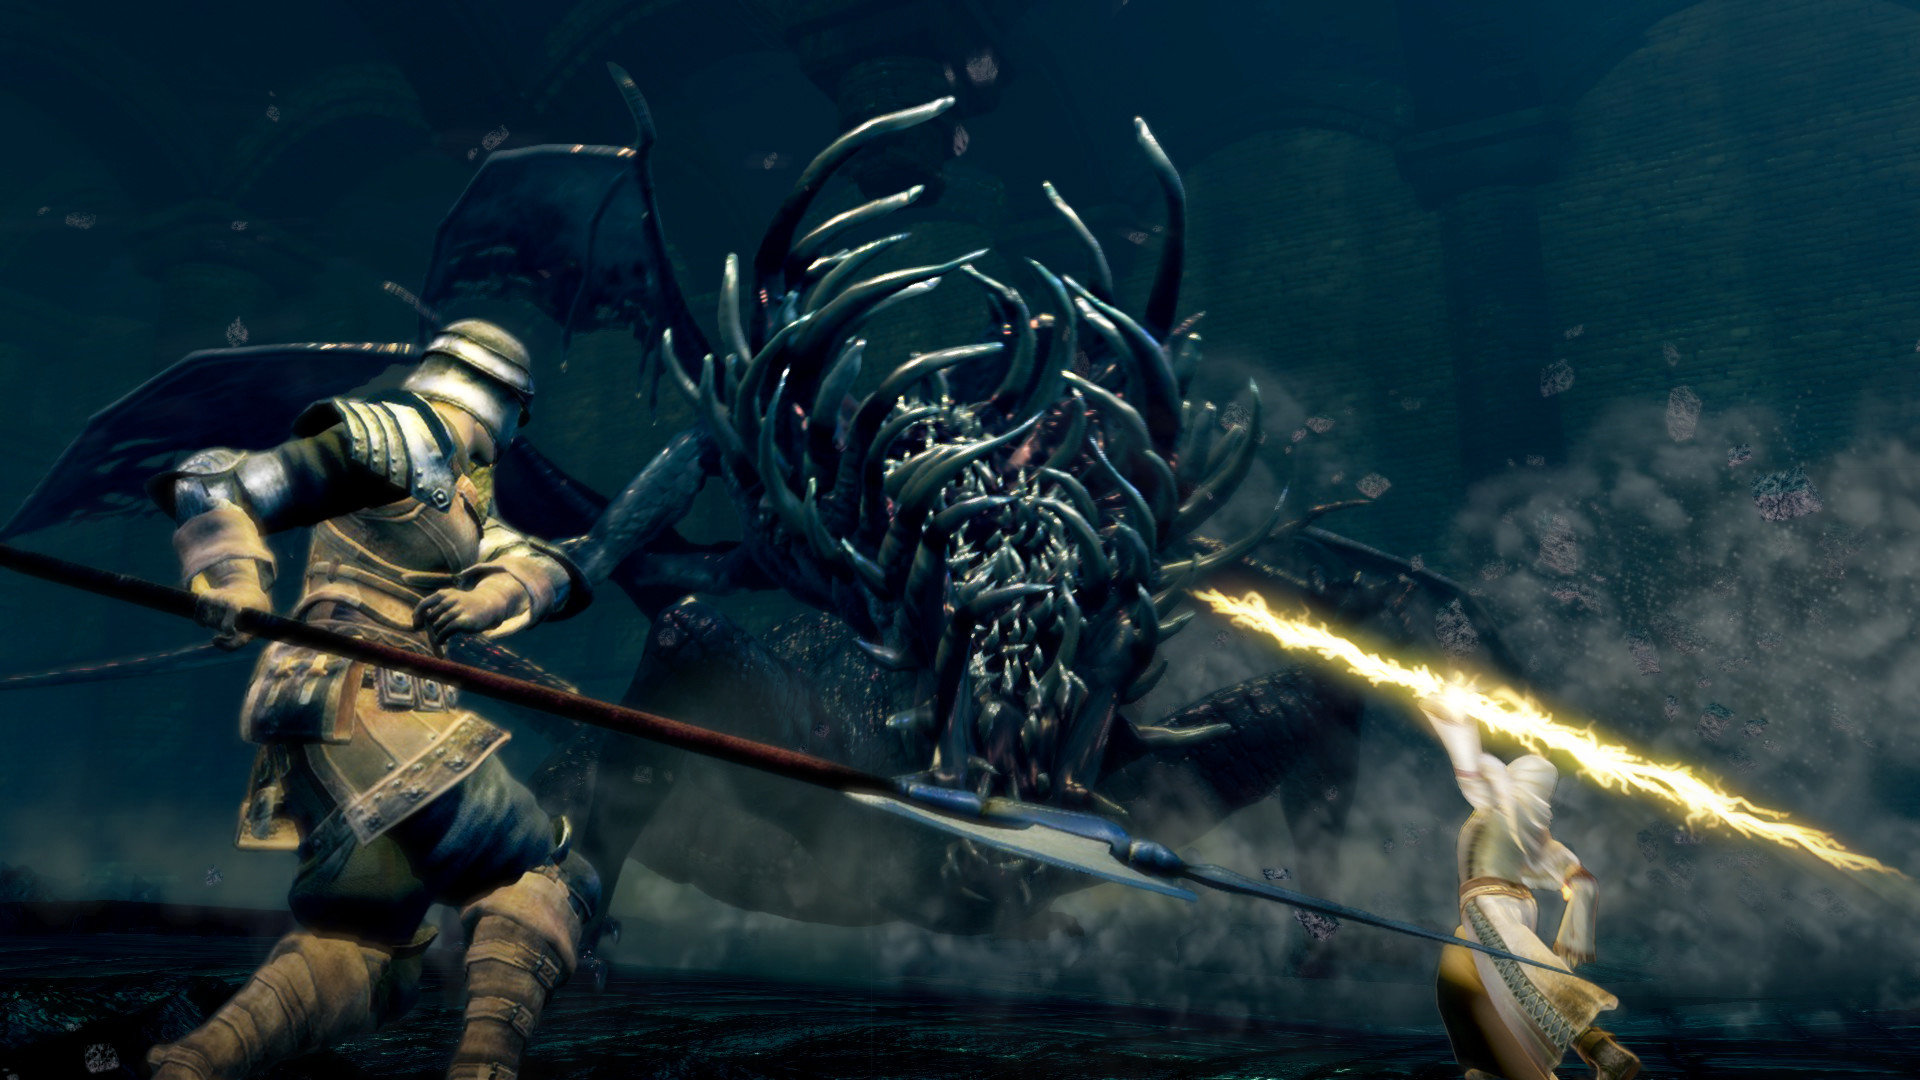 Tưng bừng tháng 5, Sony phát tặng miễn phí 2 game PlayStation khủng: Dark Souls Remastered và Dying Light - Ảnh 3.